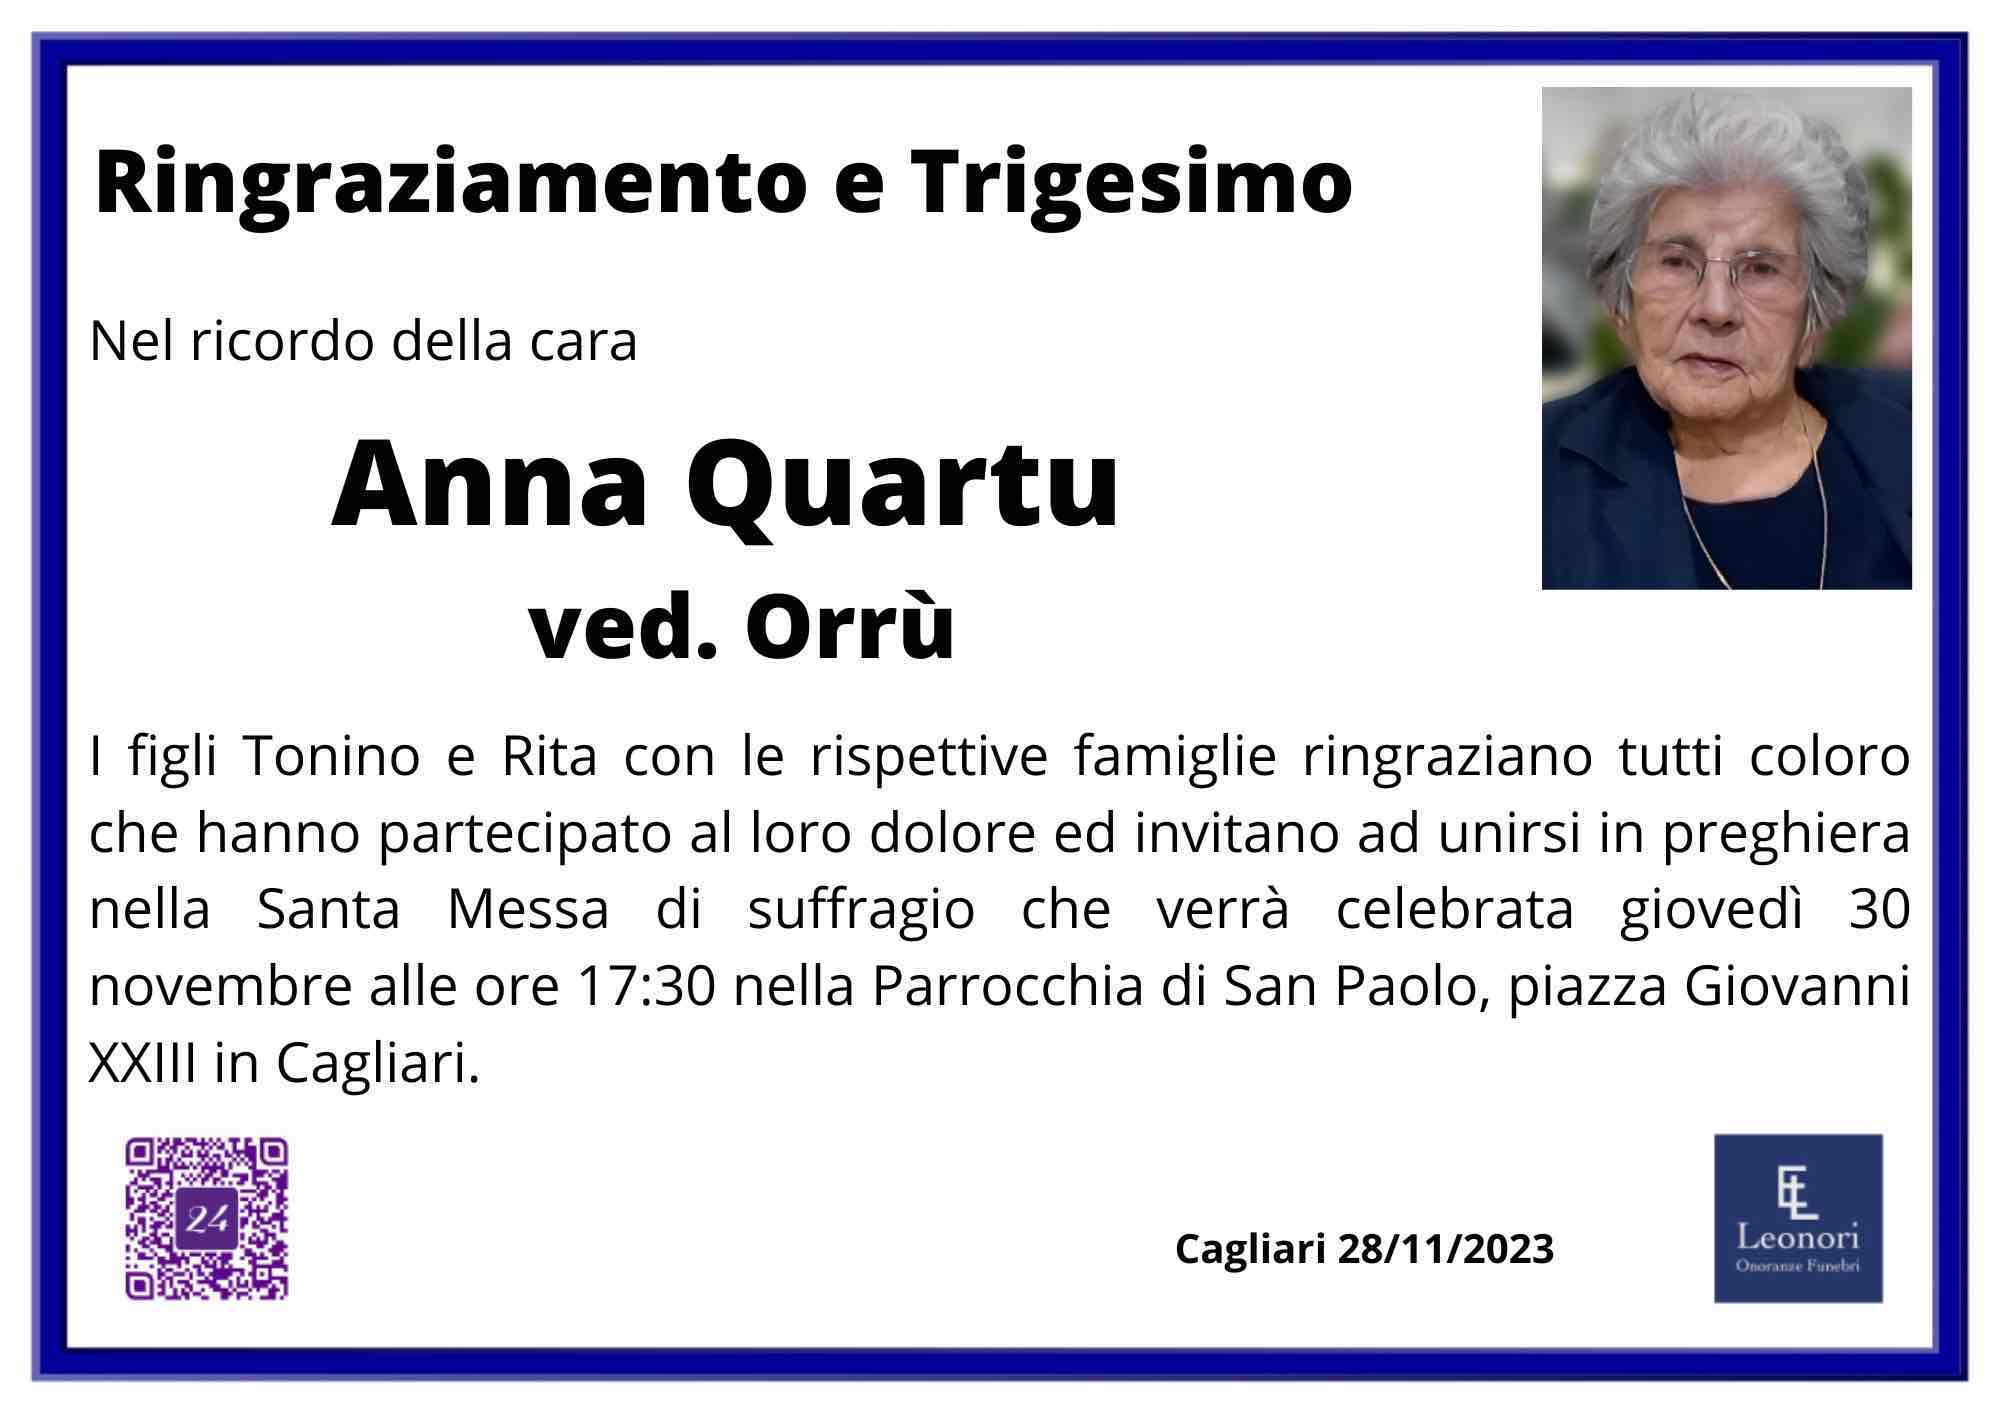 Anna Quartu